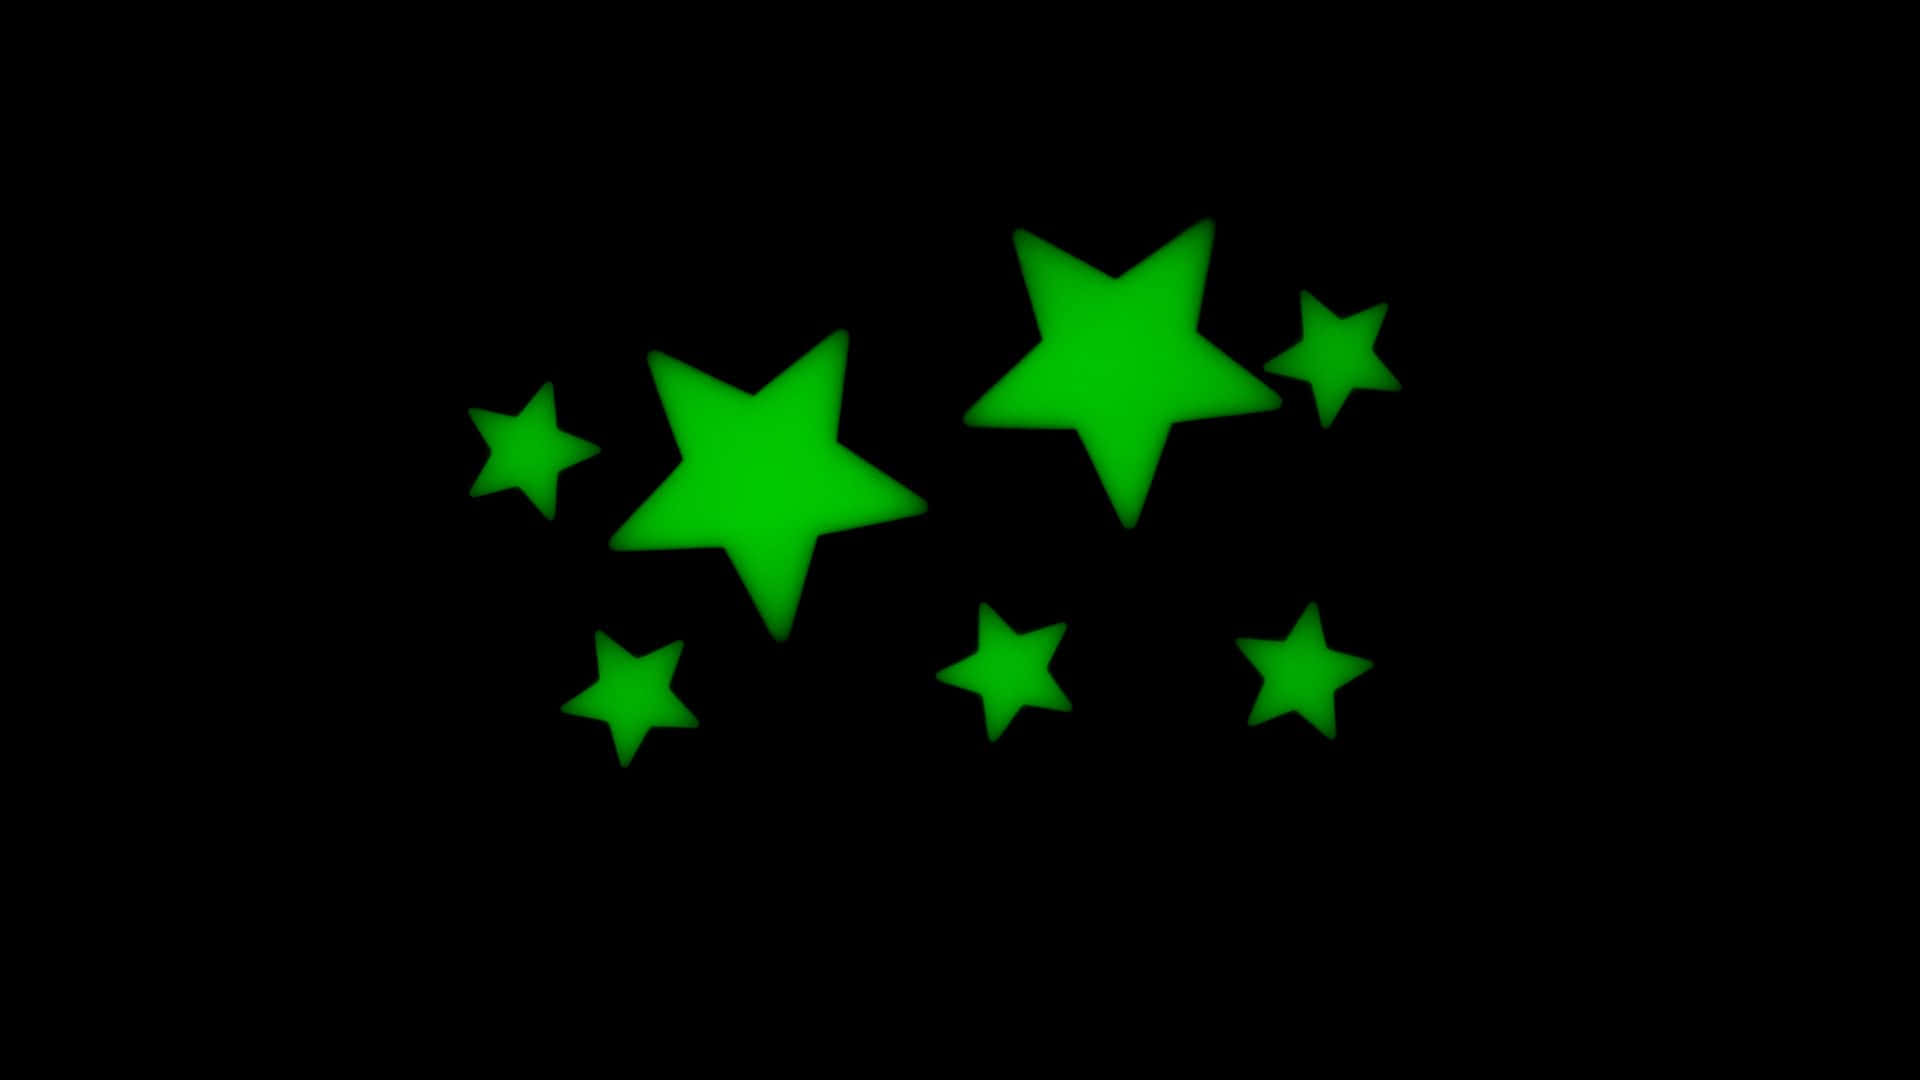 Cielonocturno Brillante Con Estrellas Y Aurora. Fondo de pantalla